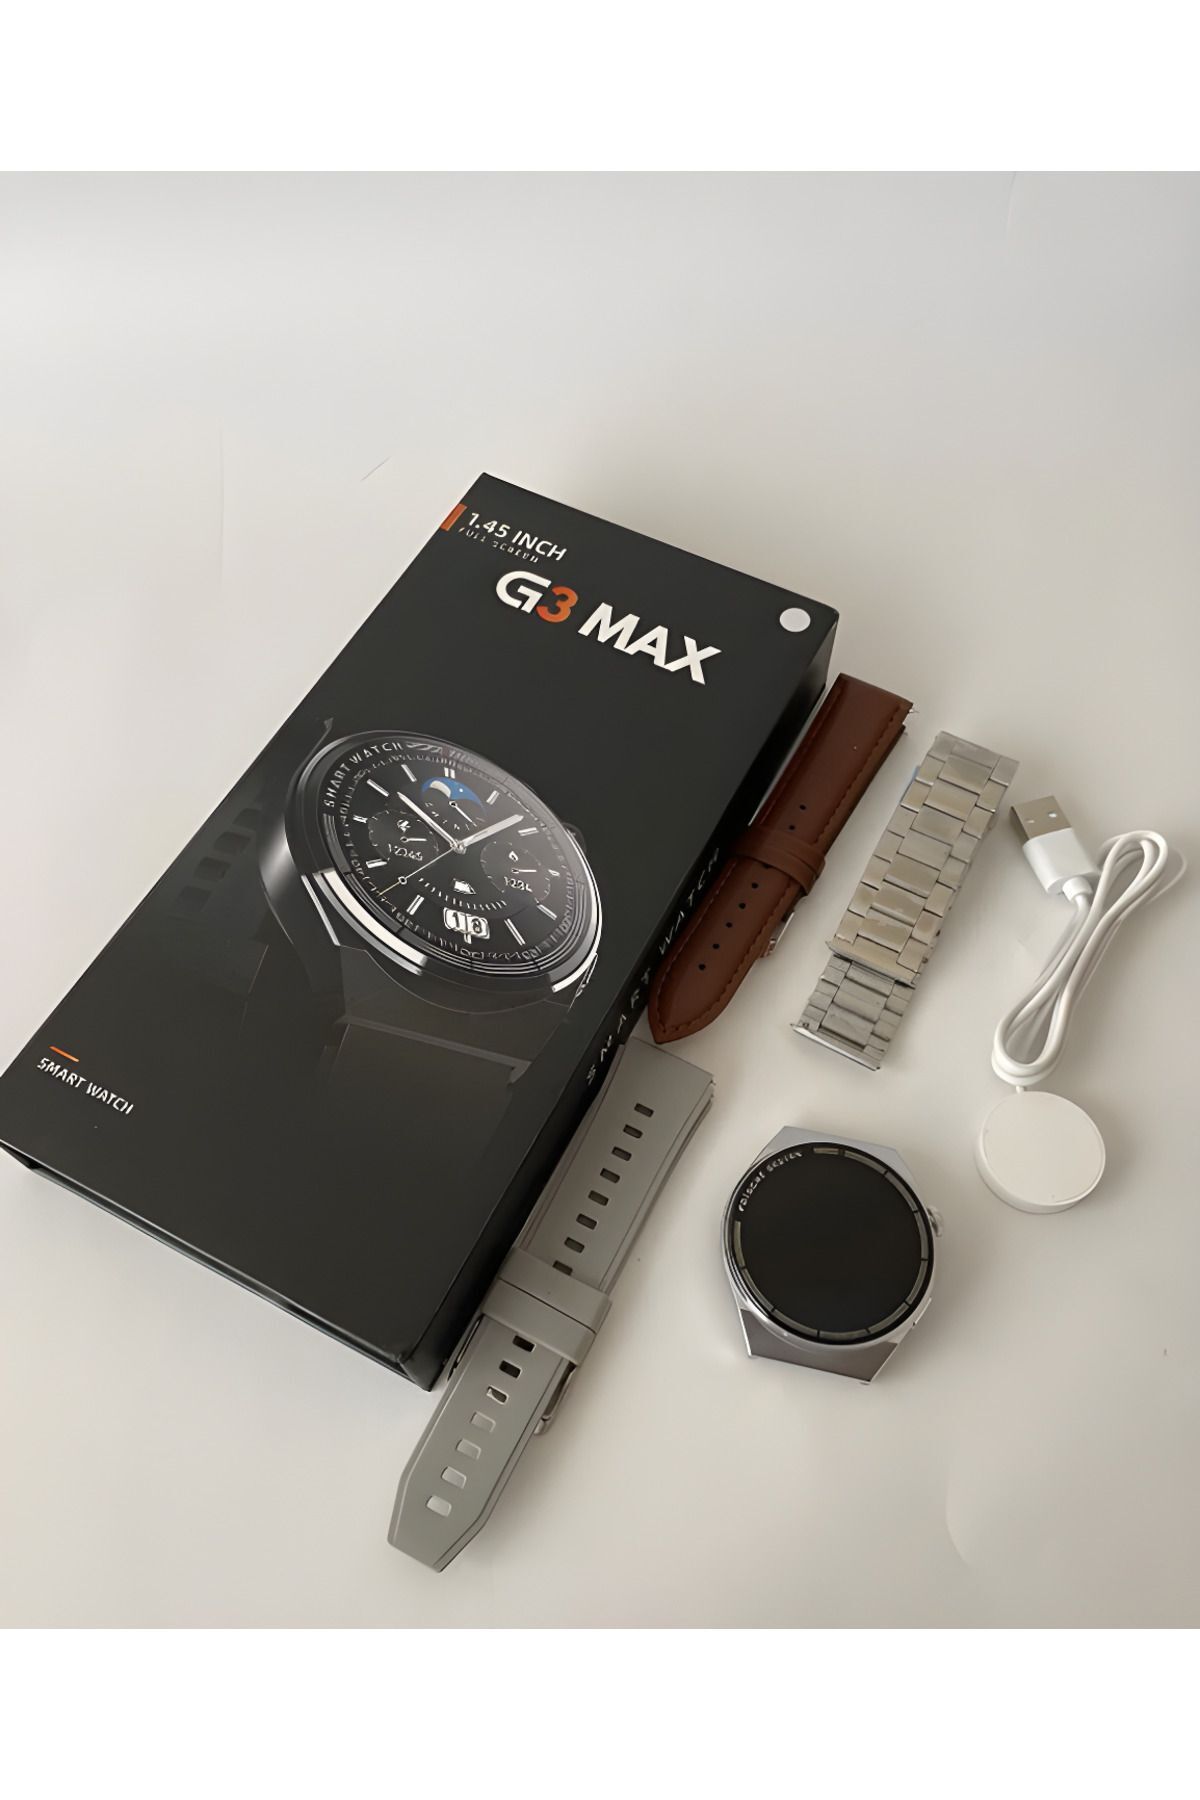 Smart Watch Gt3 Max (3 Kordonlu) Bt Çağrı Destekli Akıllı Saat